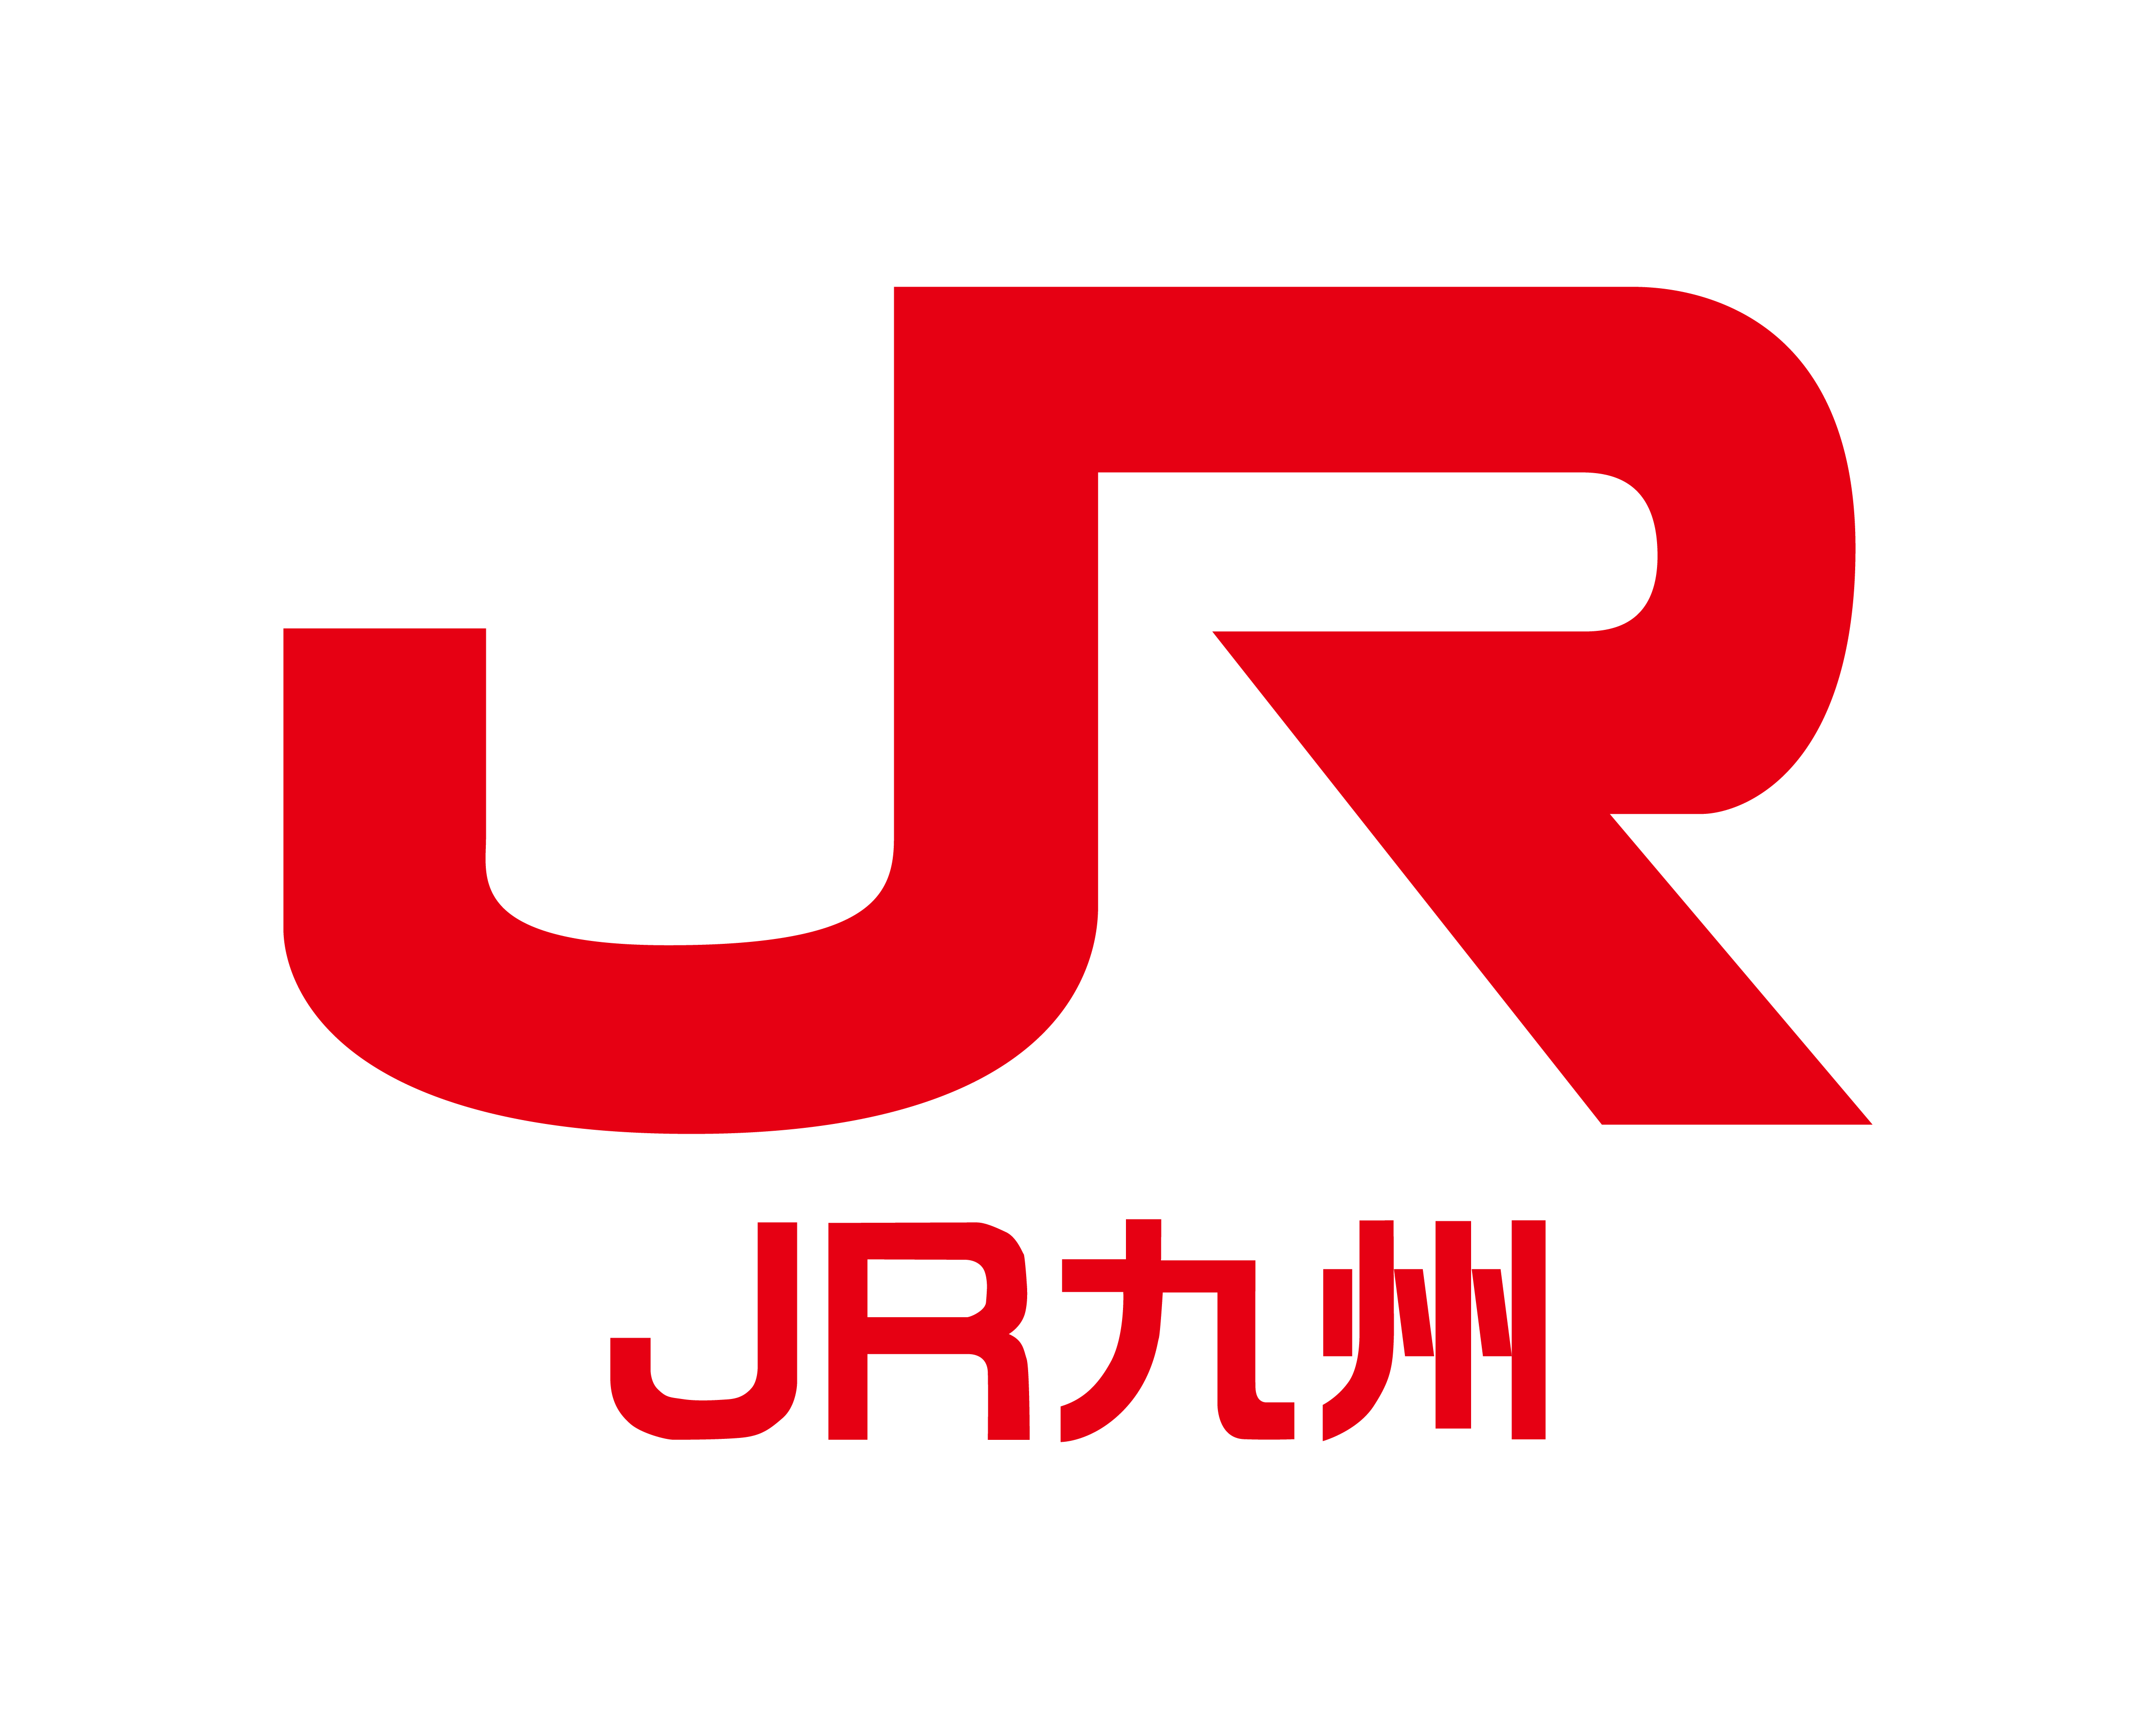 077 – JR Kyushu